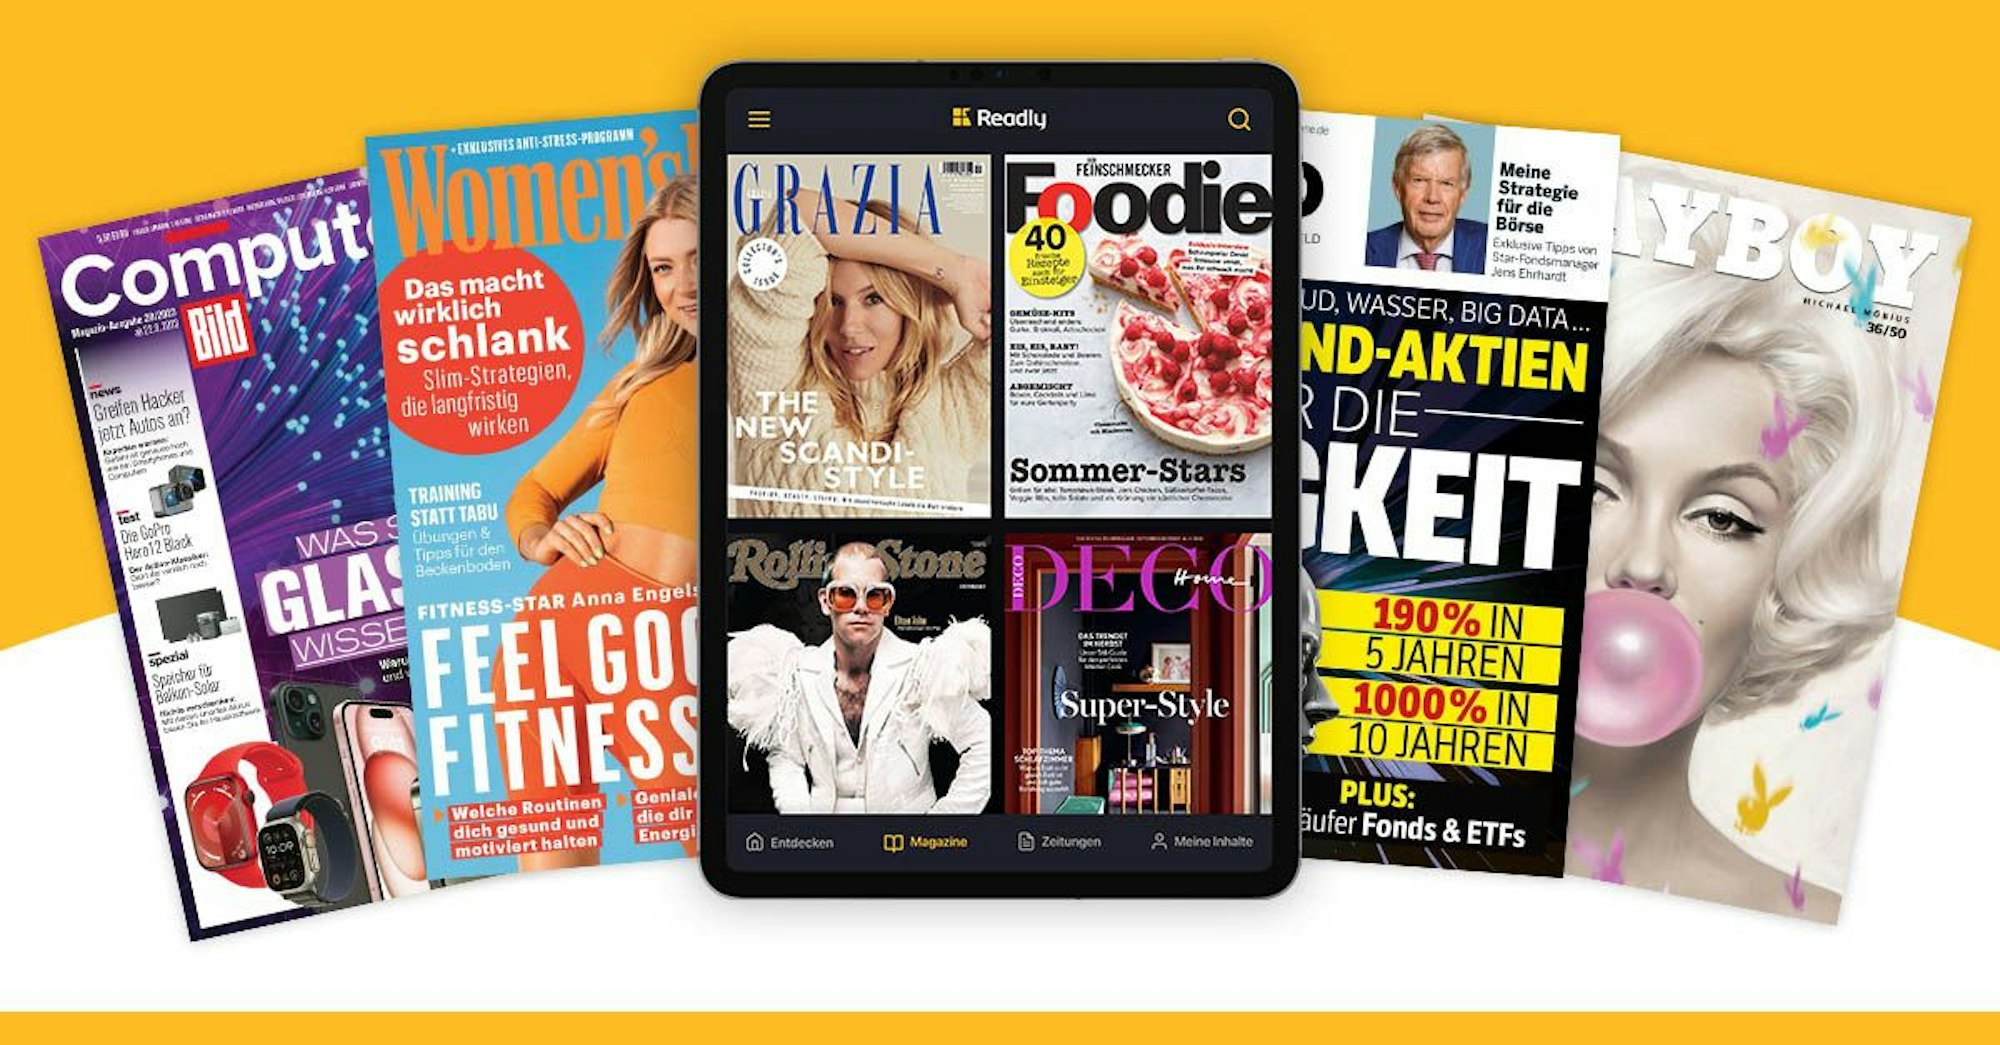 Exklusives Readly Angebot mit 0,99 € für 3 Monate: Über 7.000 aktuelle  Magazine und Zeitungen überall lesen | Express